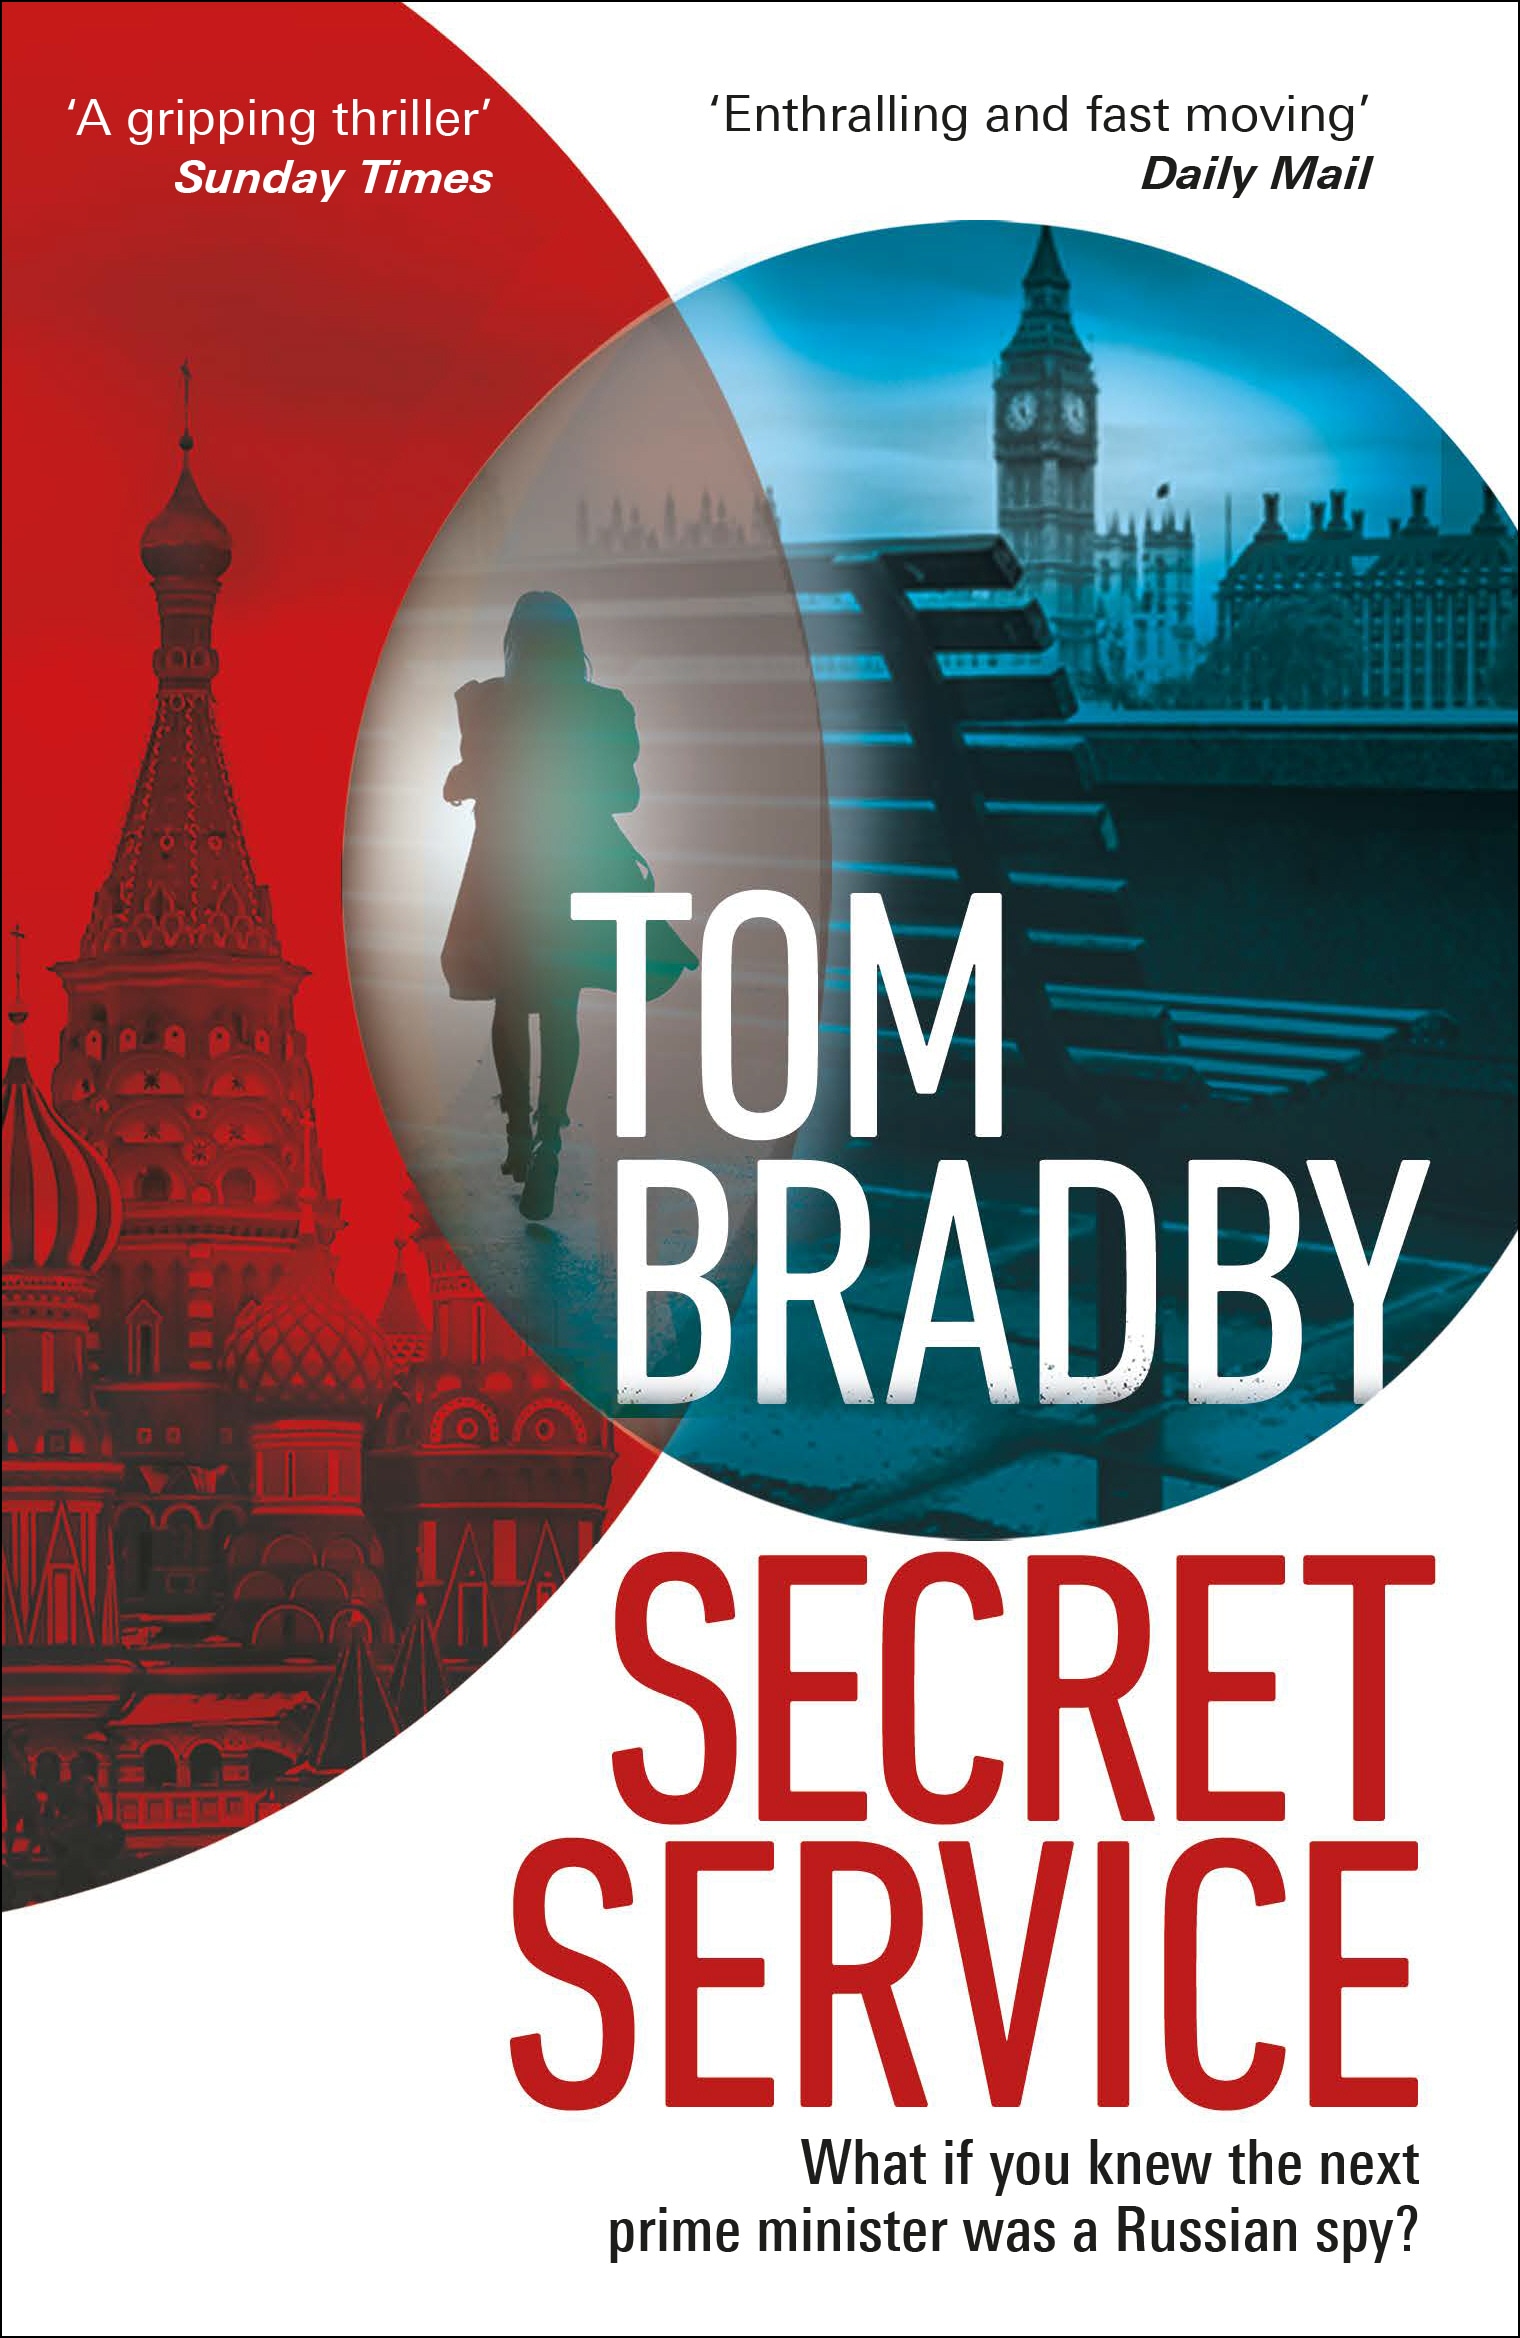 Book “Secret Service” by Tom Bradby — January 9, 2020